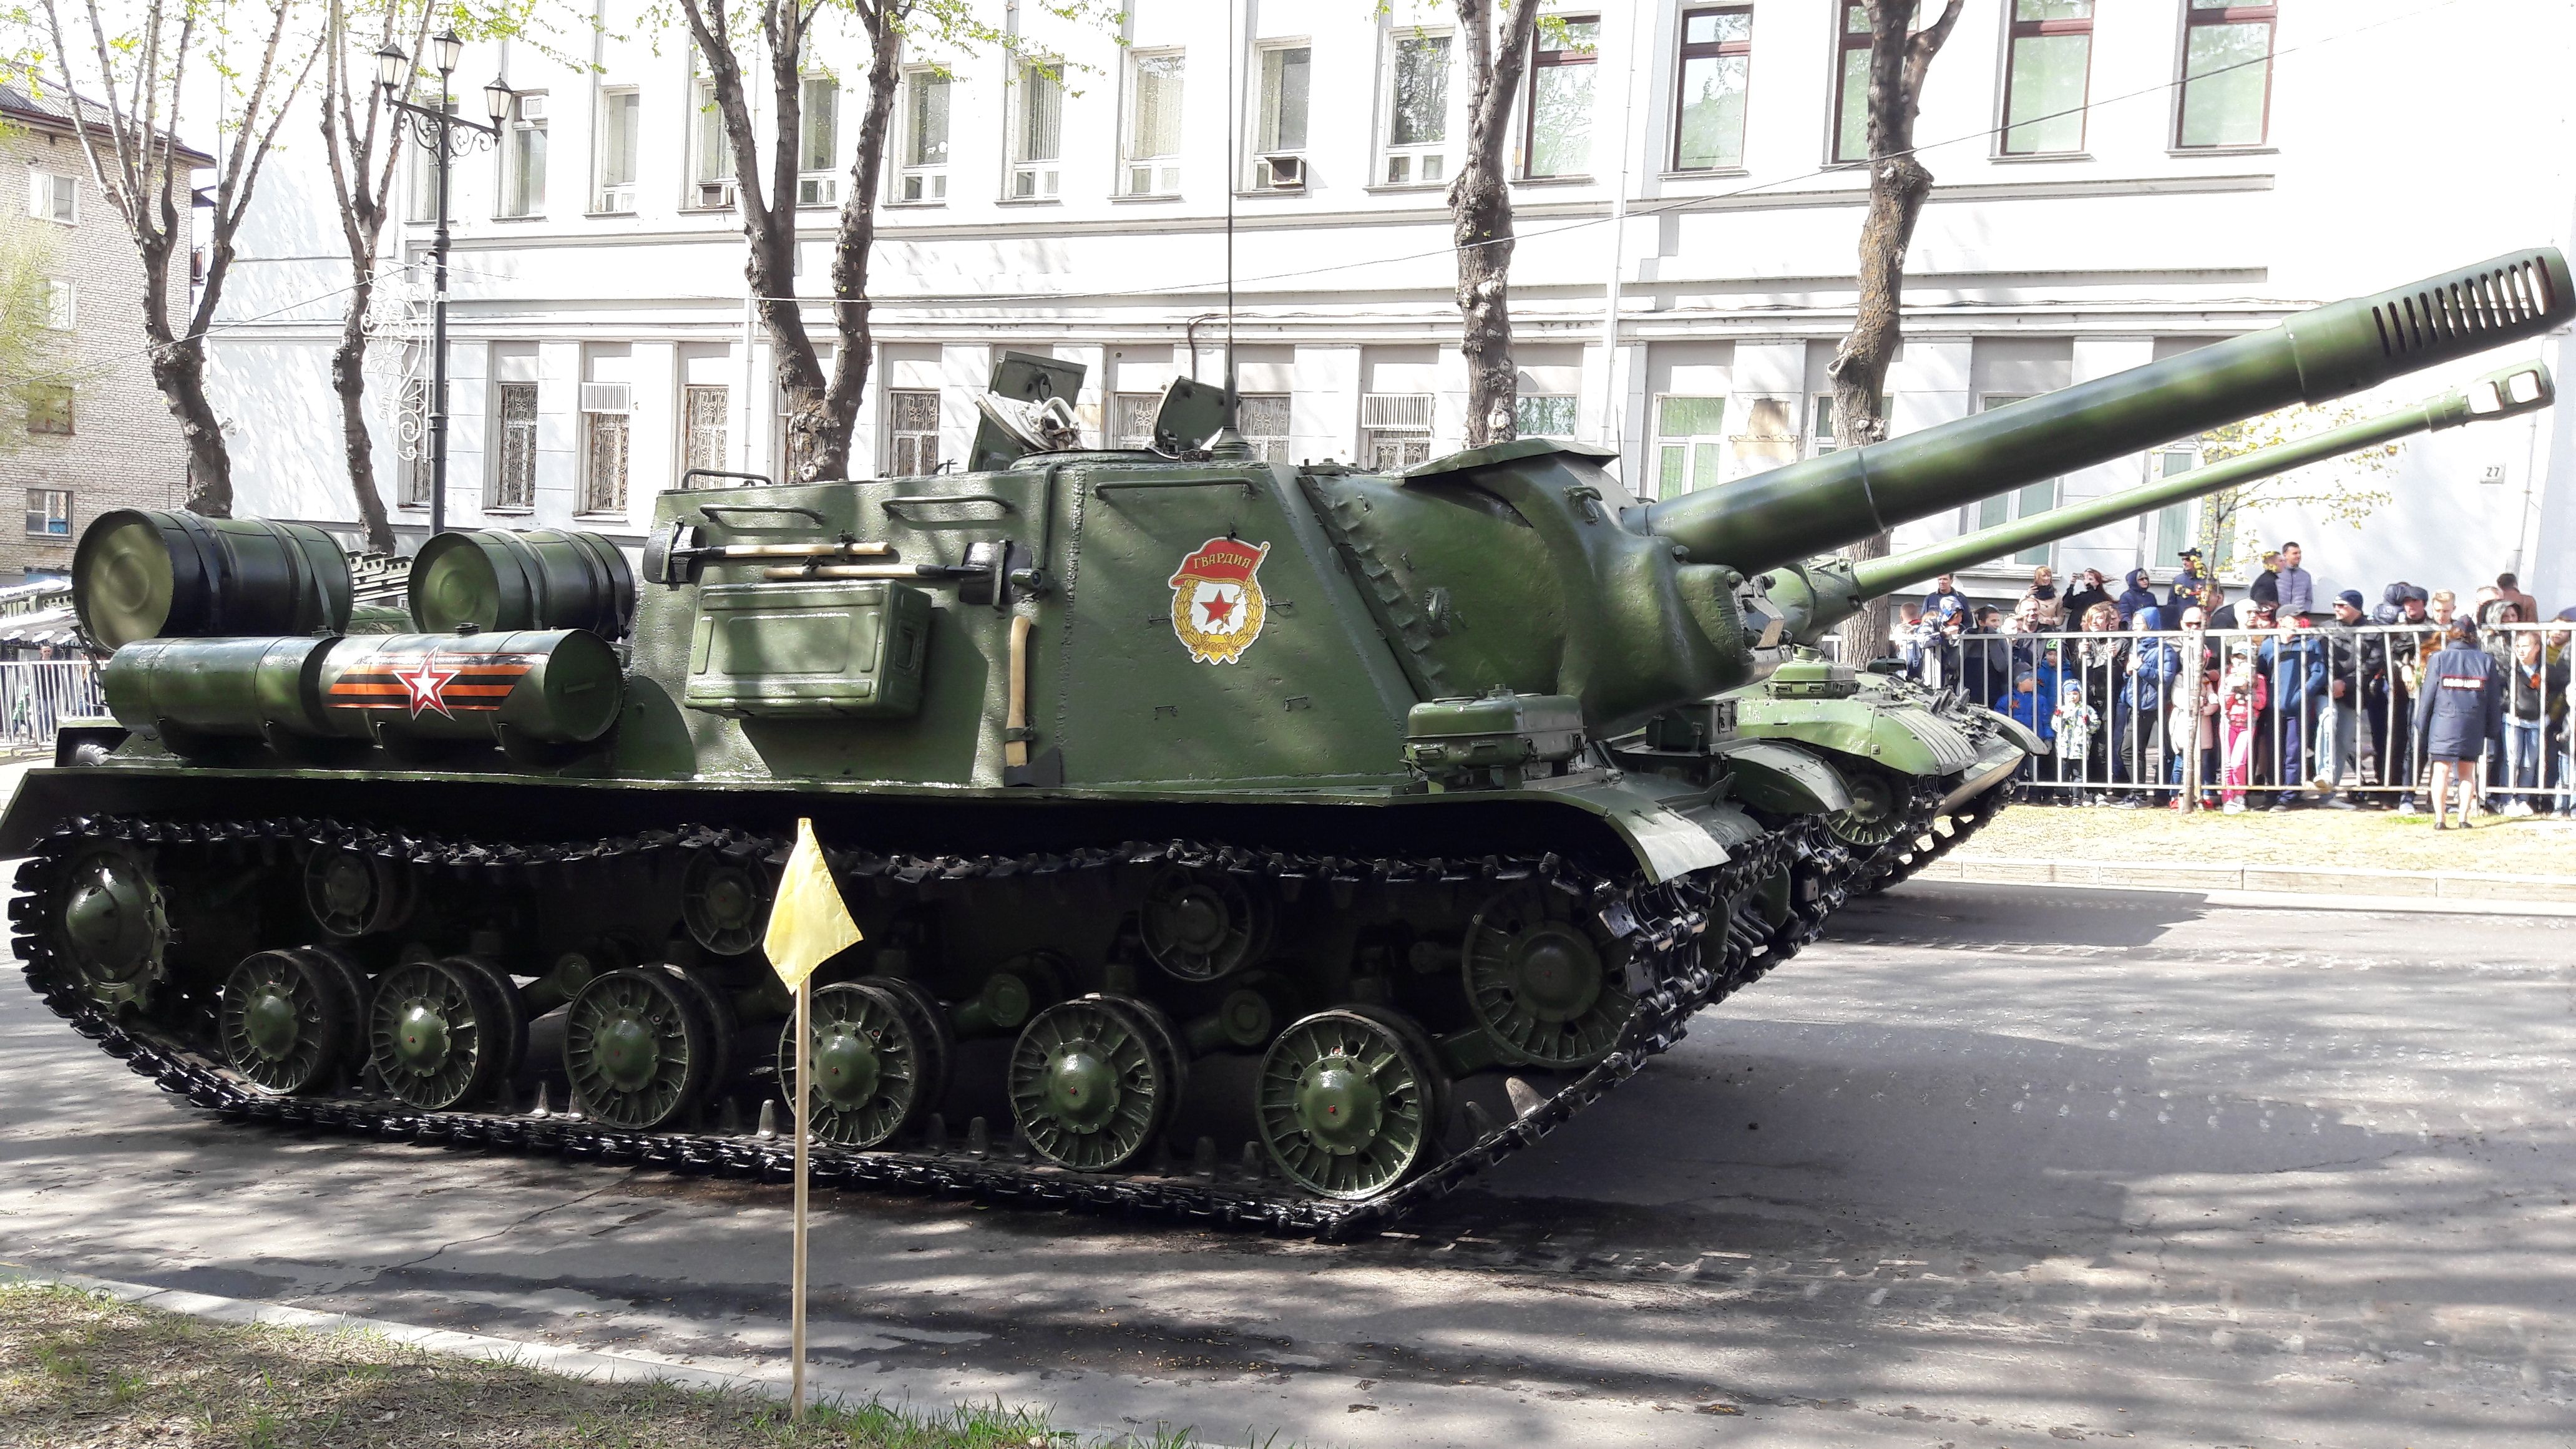 Ветеран войны ИСУ-152 впервые на параде в г. Хабаровске